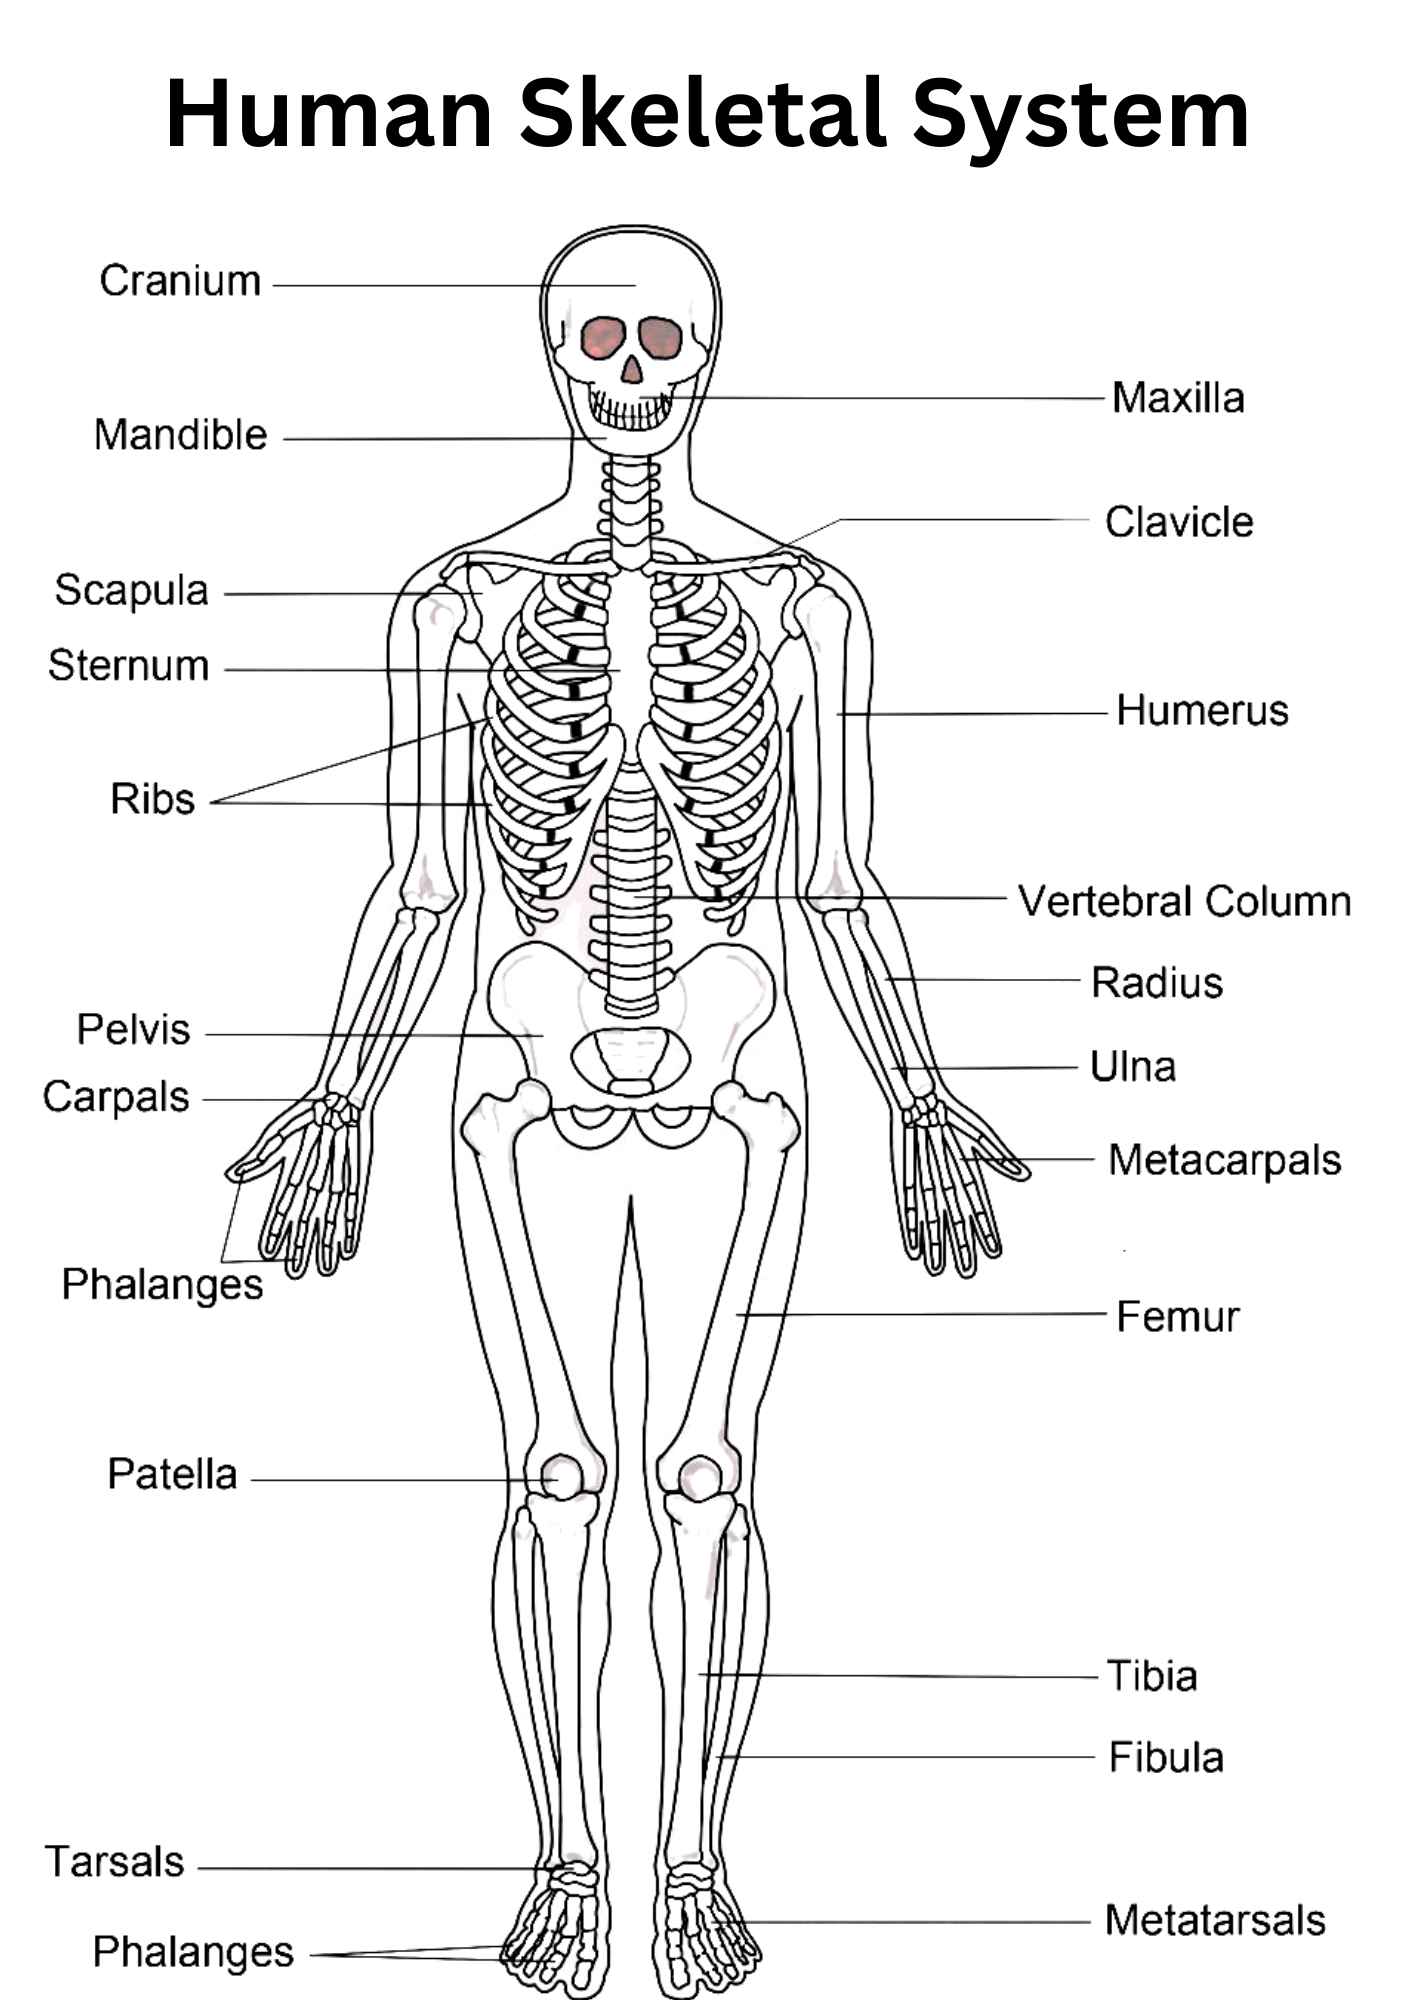 skeletal system definition essay